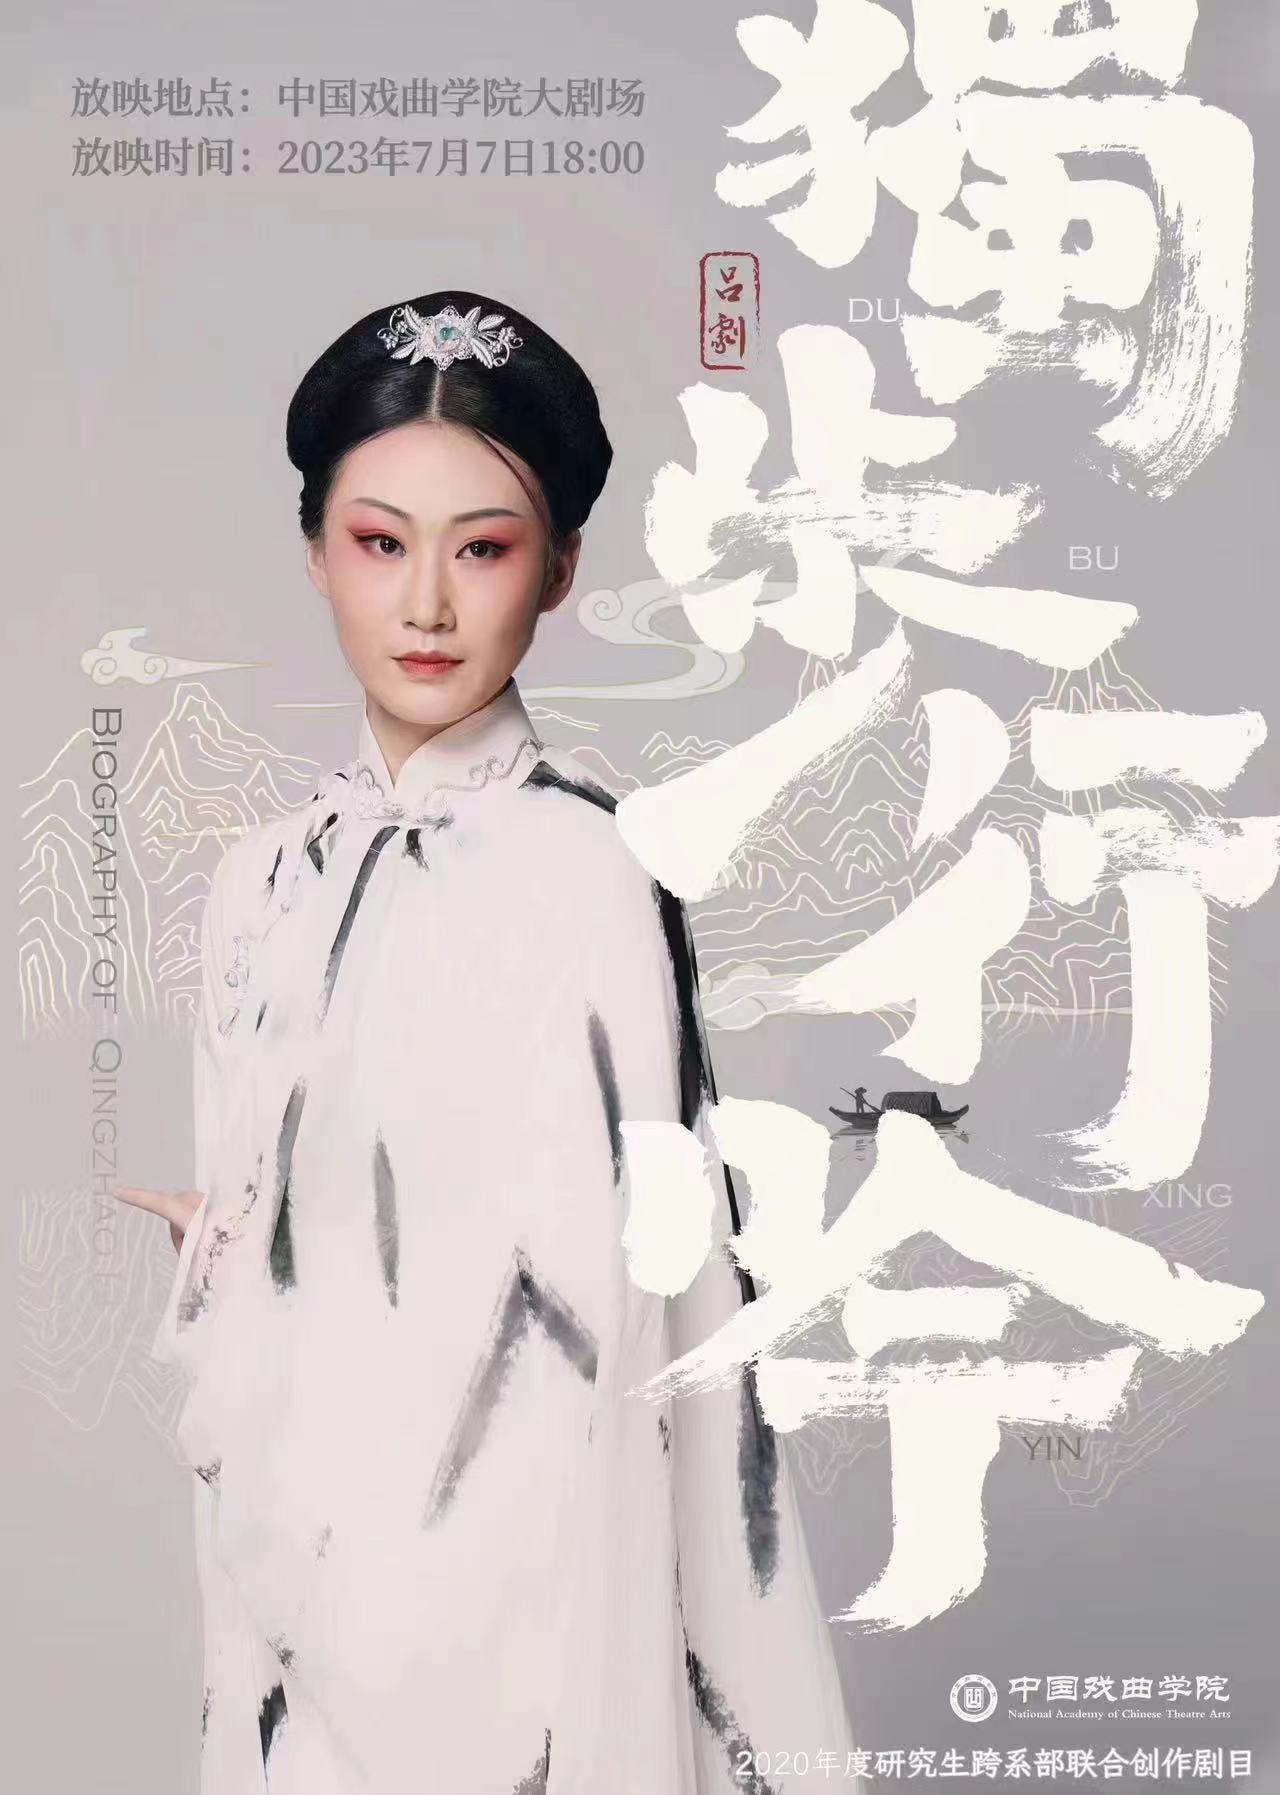 中国戏曲学院2023年度研究生跨系部联合创作剧目《独步行吟》展映